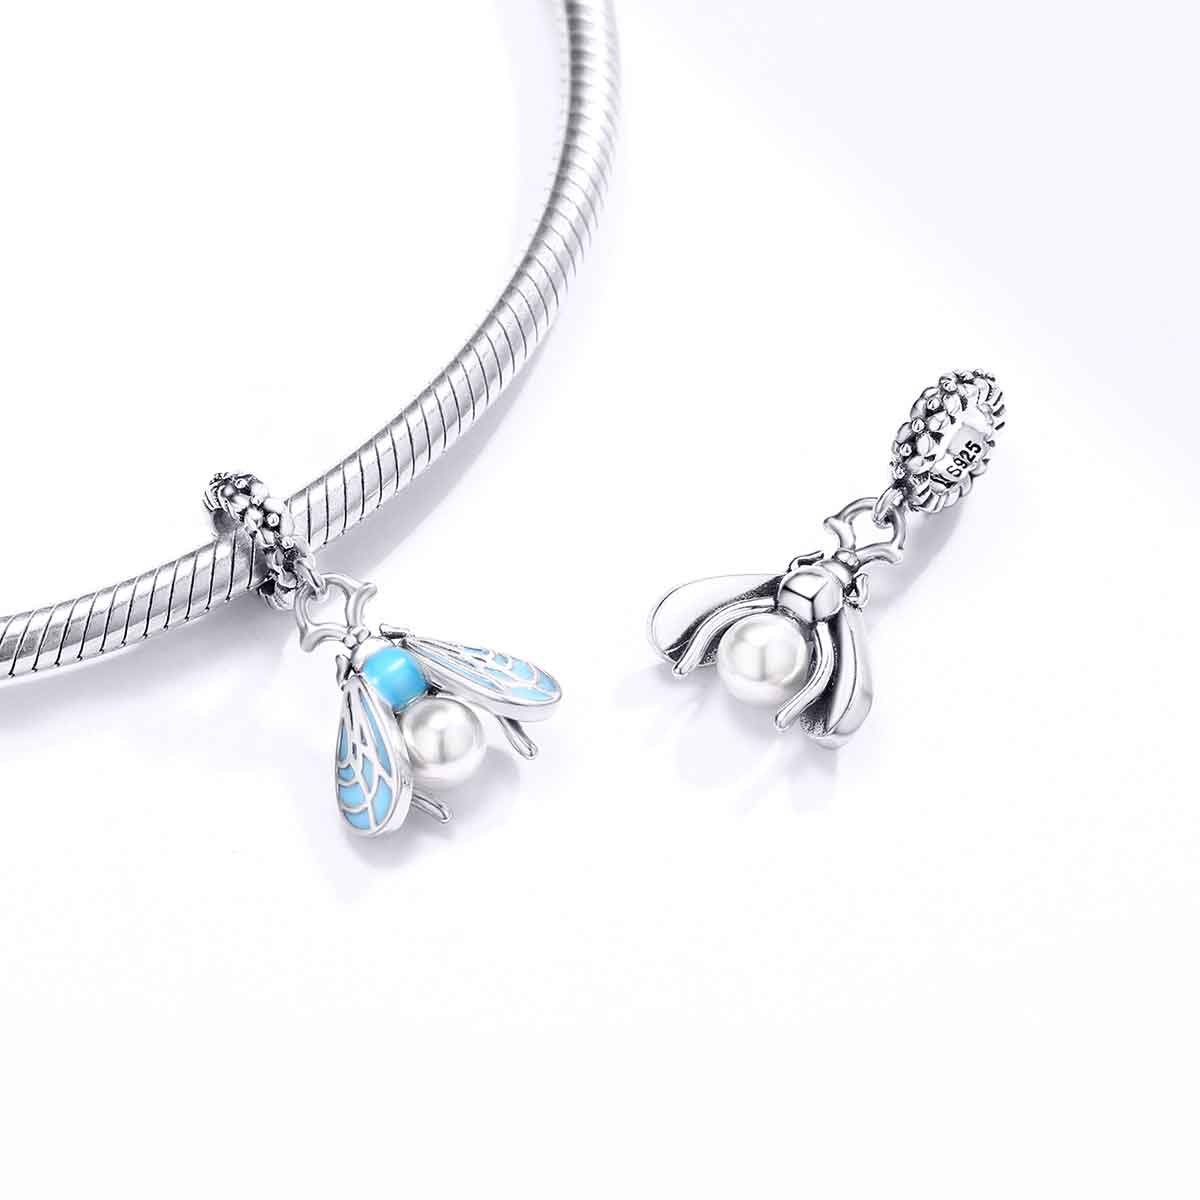 charm silver moth  blue bracelet for women girls